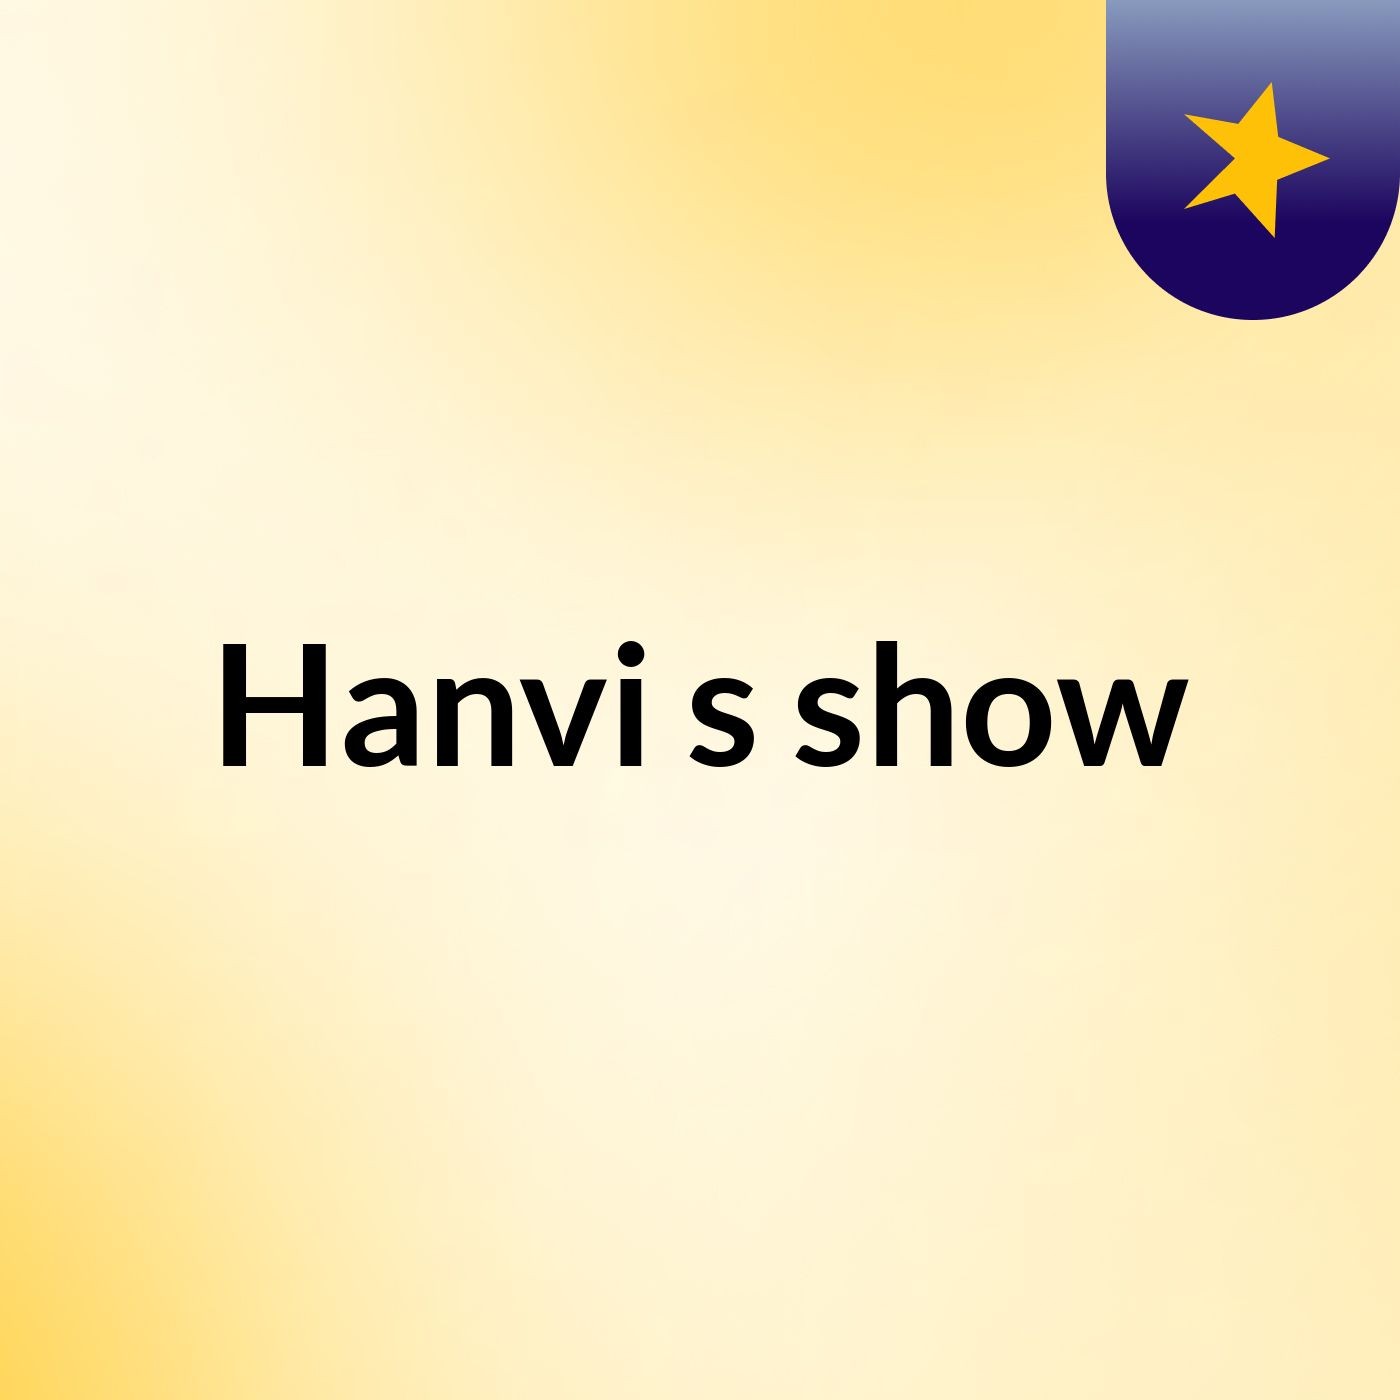 Hanvi's show